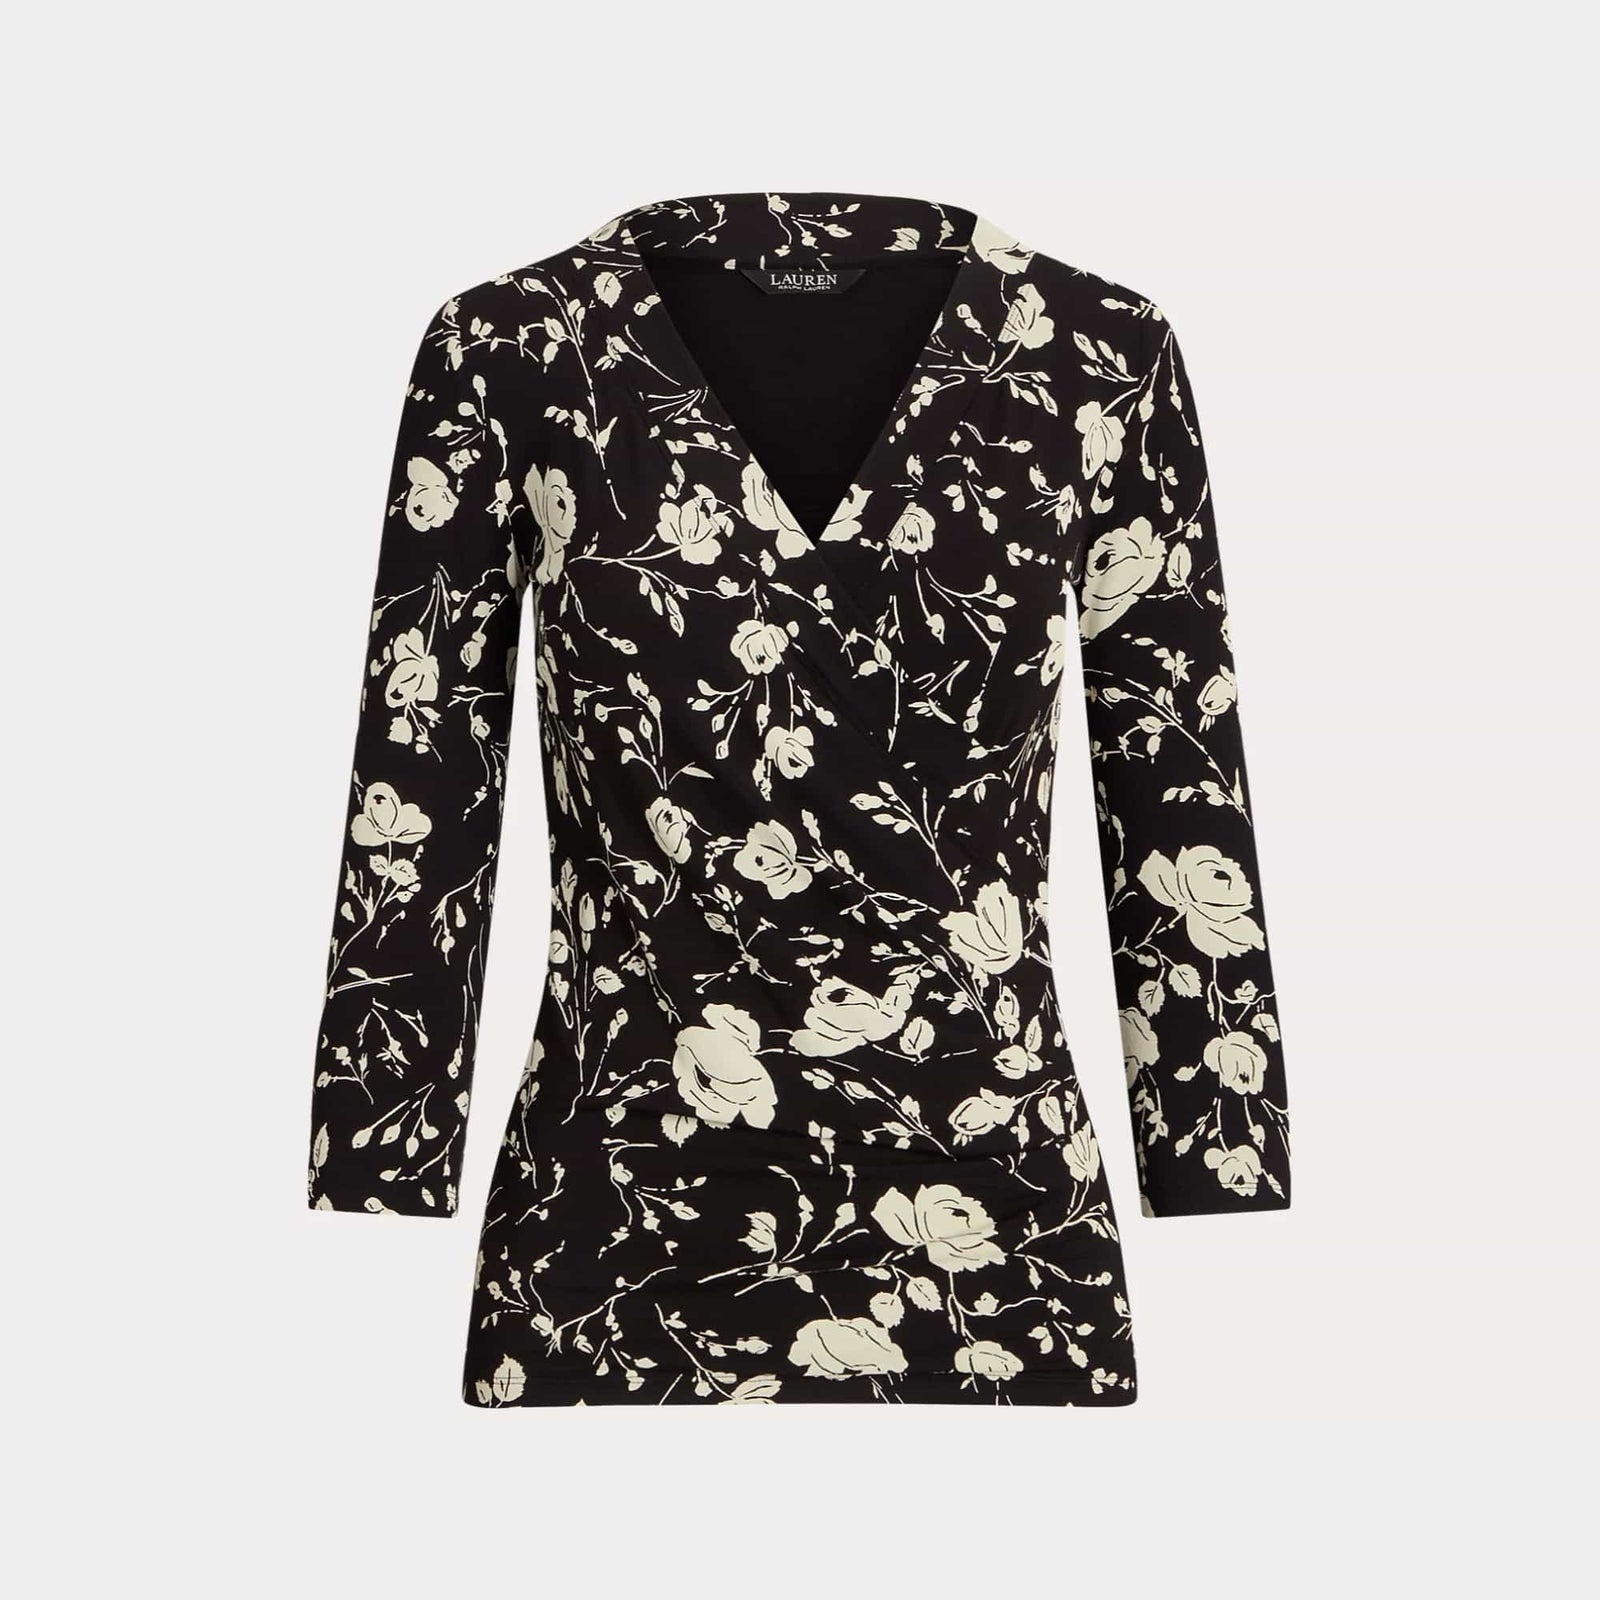 Lauren Ralph Lauren Floral Surplice Stretch Jersey Top in Black/Cream